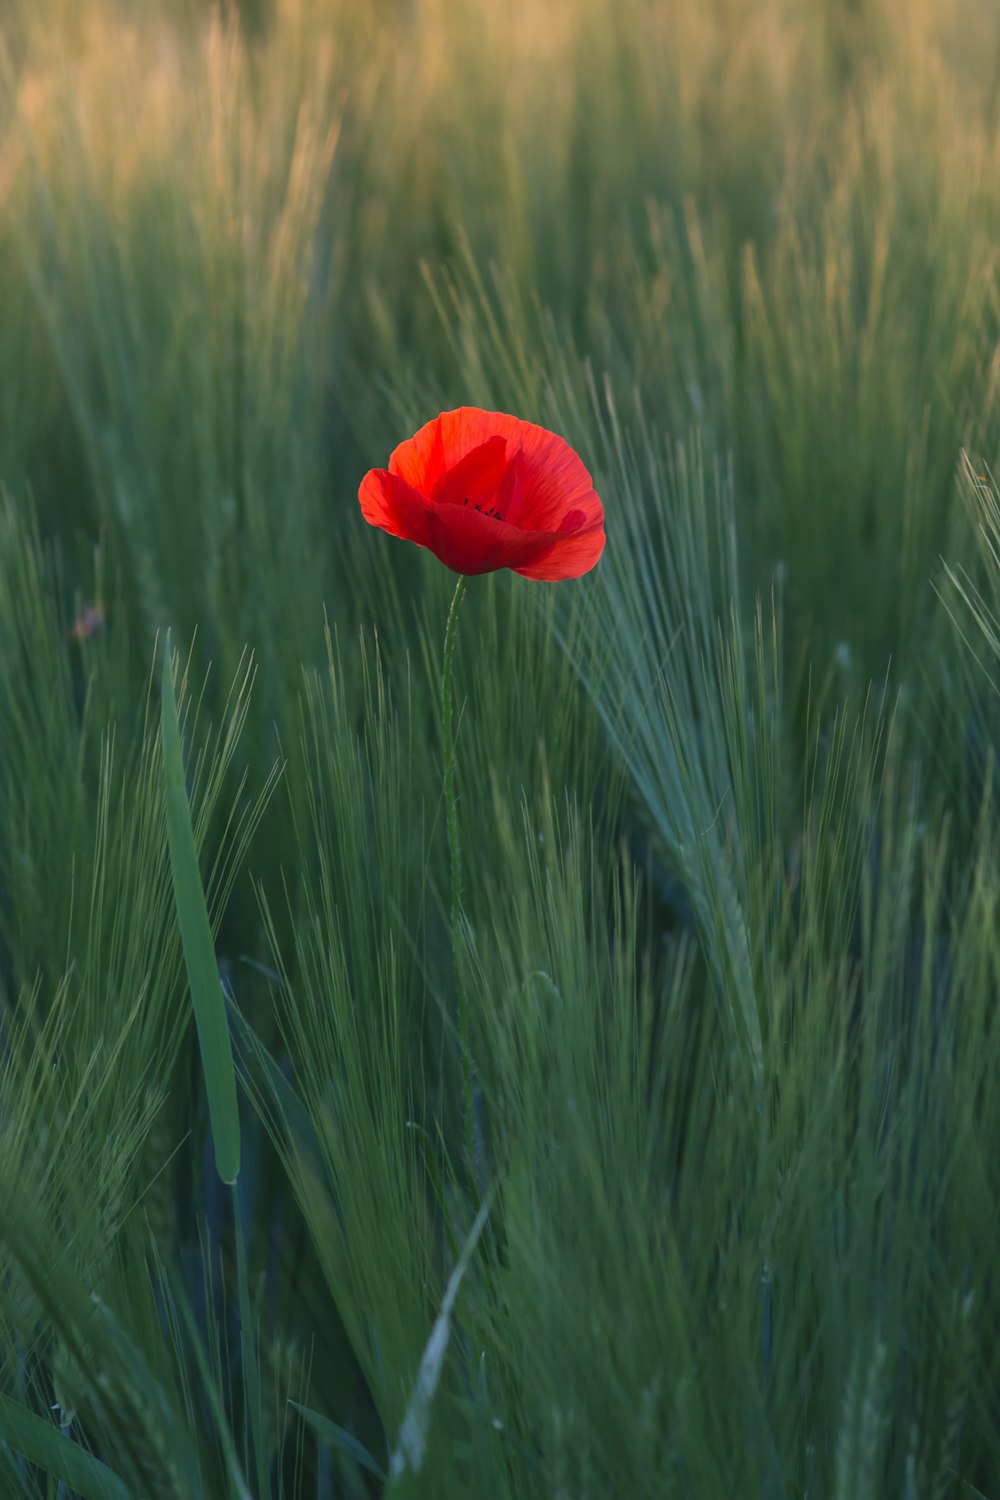 fiore rosso in mezzo alle erbe verdi